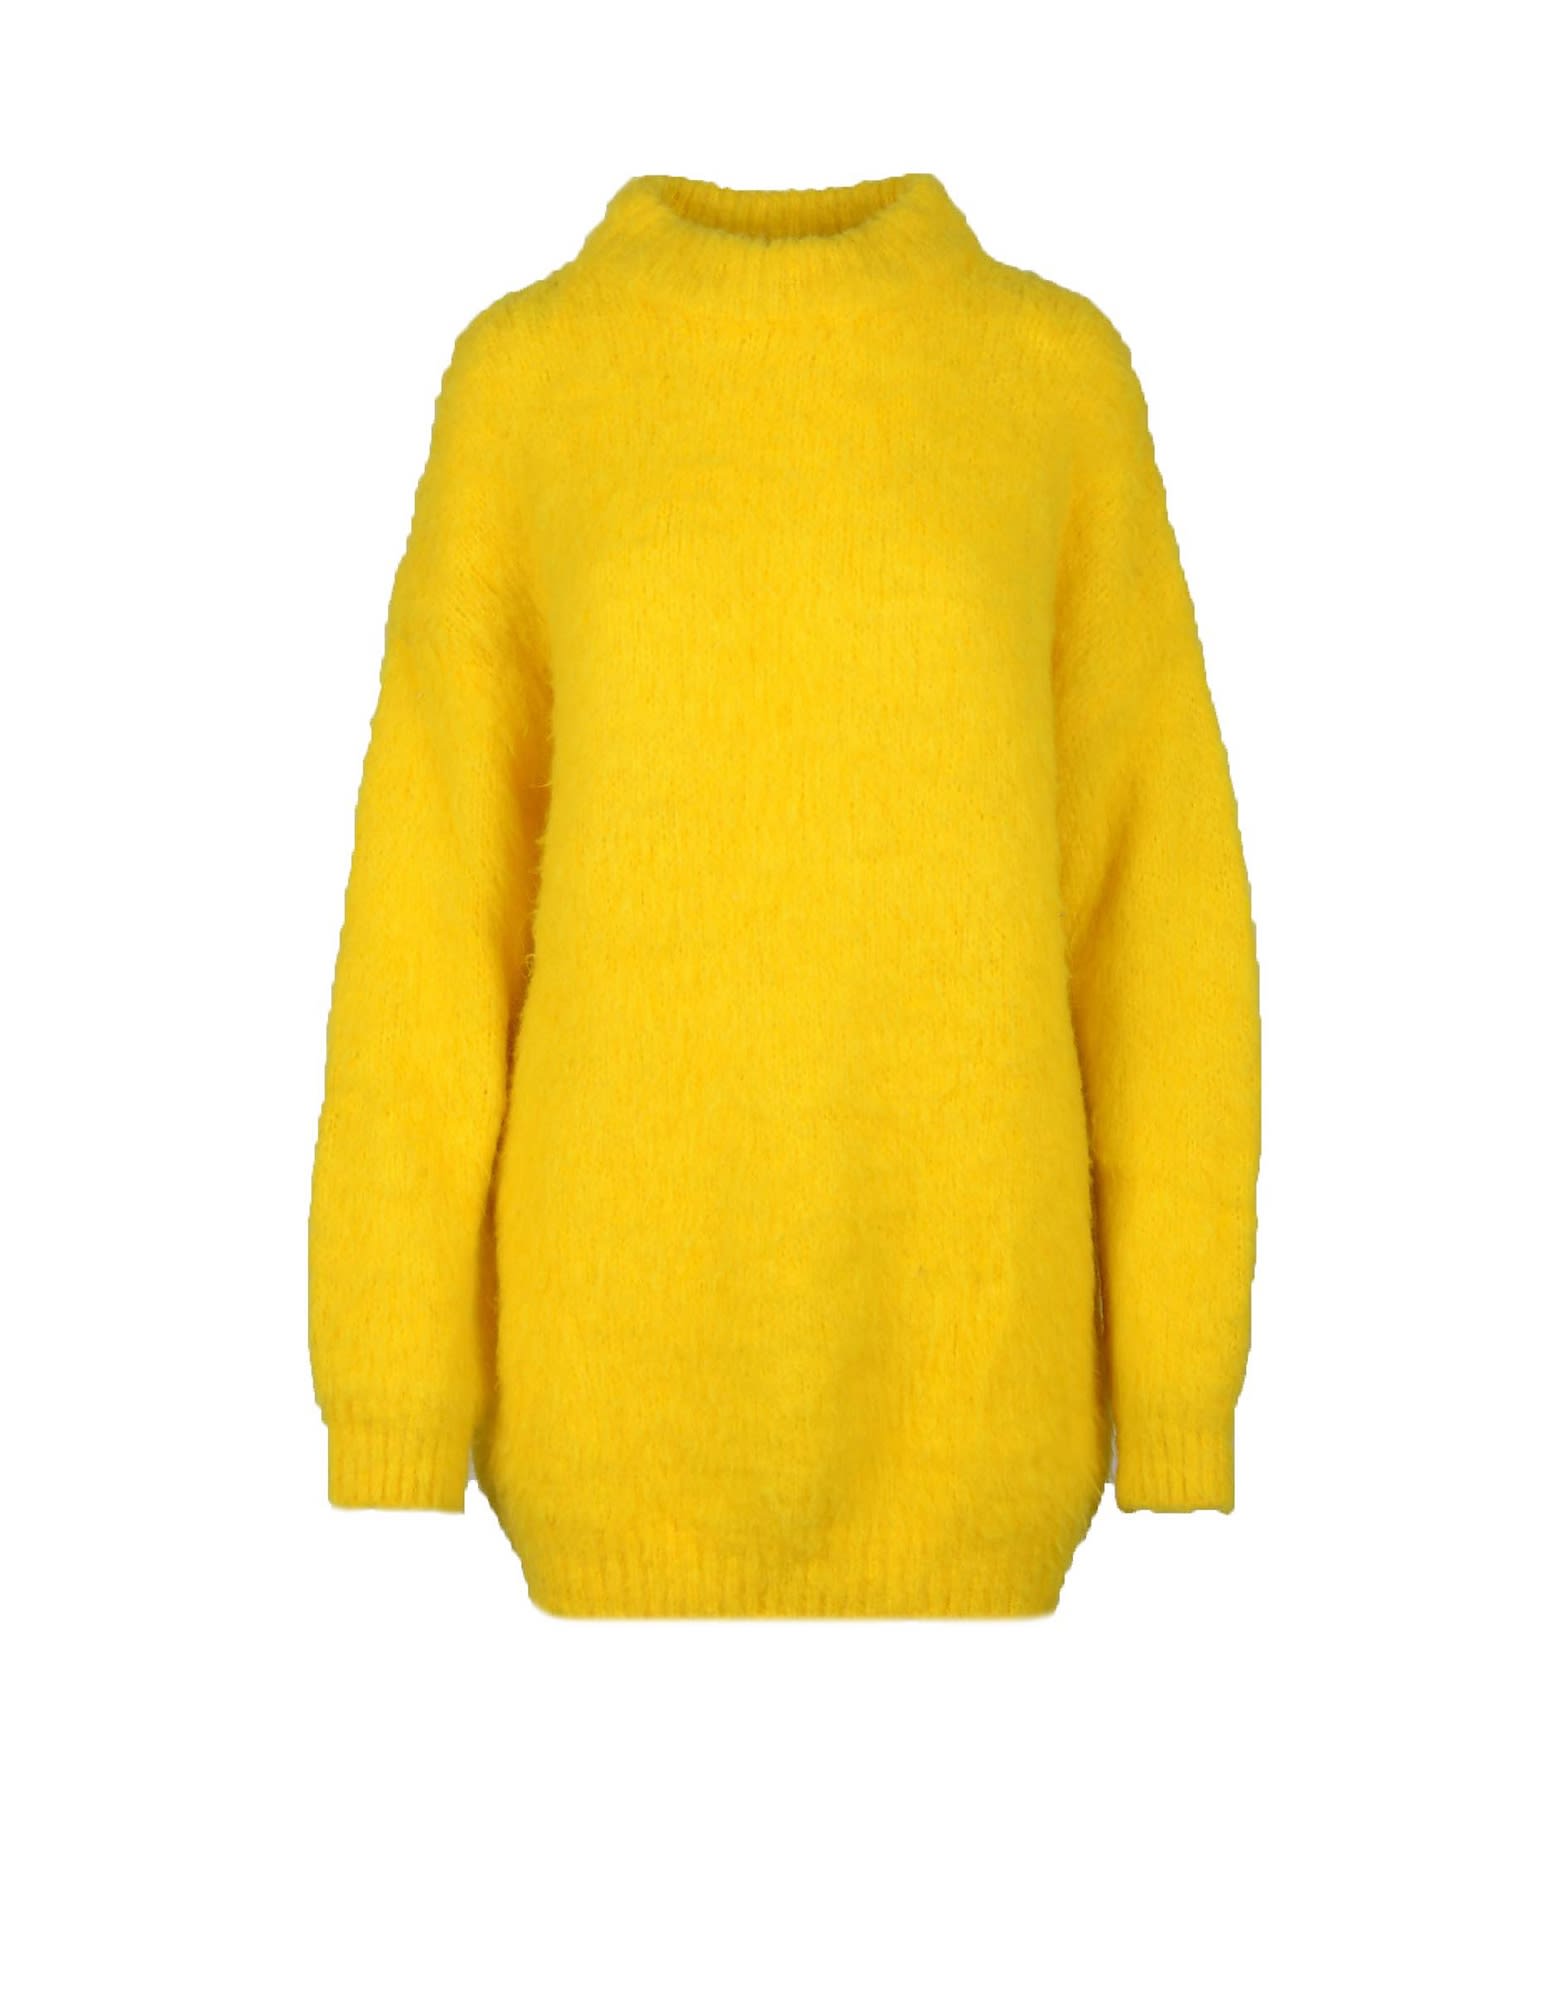 Erika Cavallini Womens Yellow Sweater